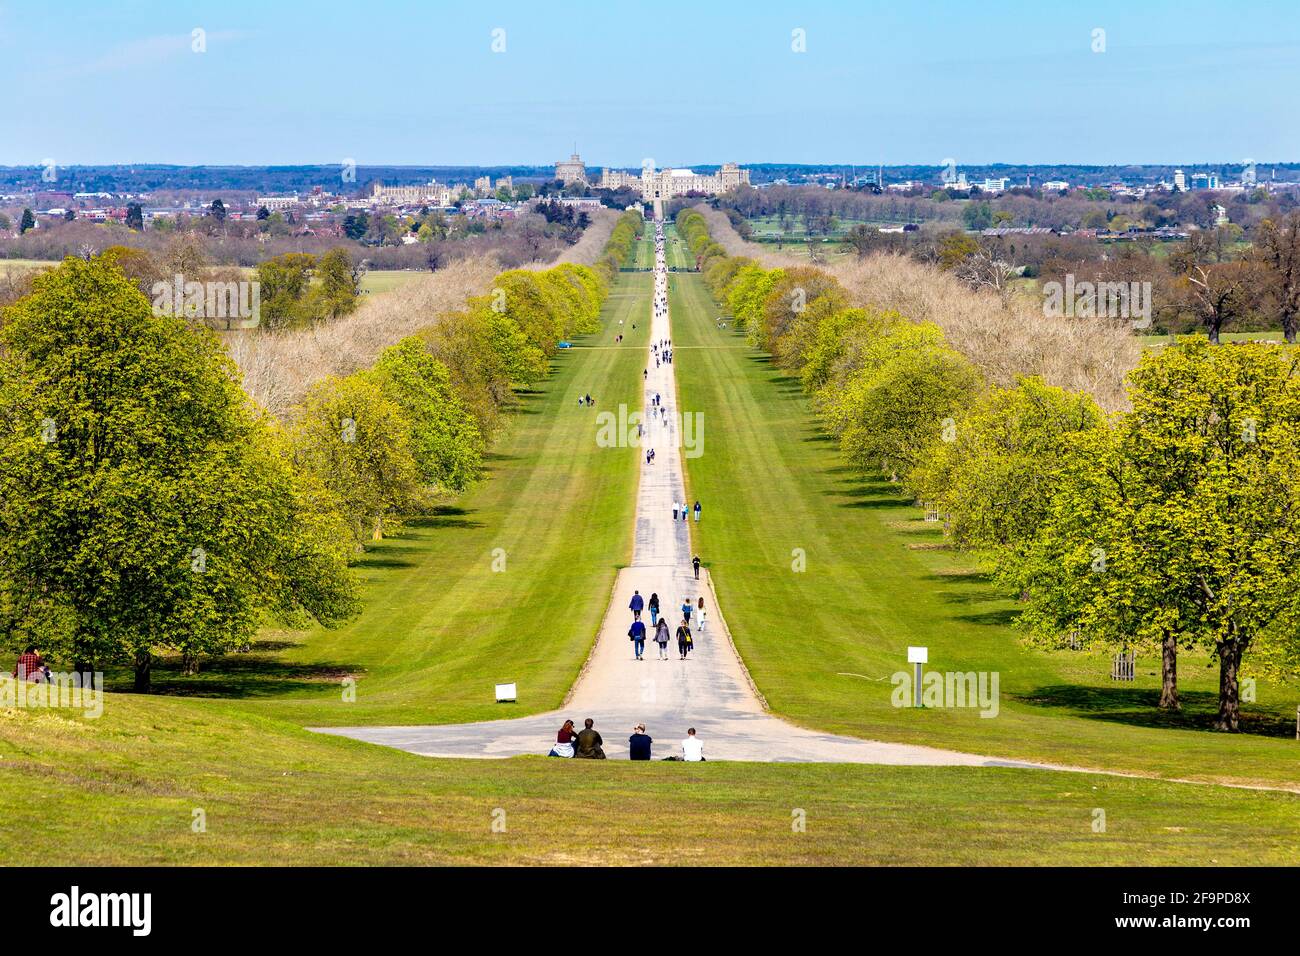 Vista de la caminata larga en Windsor Great Park desde Snow Hill que conduce a la residencia real del castillo medieval de Windsor del siglo 11th, Windsor, Berkshire Foto de stock